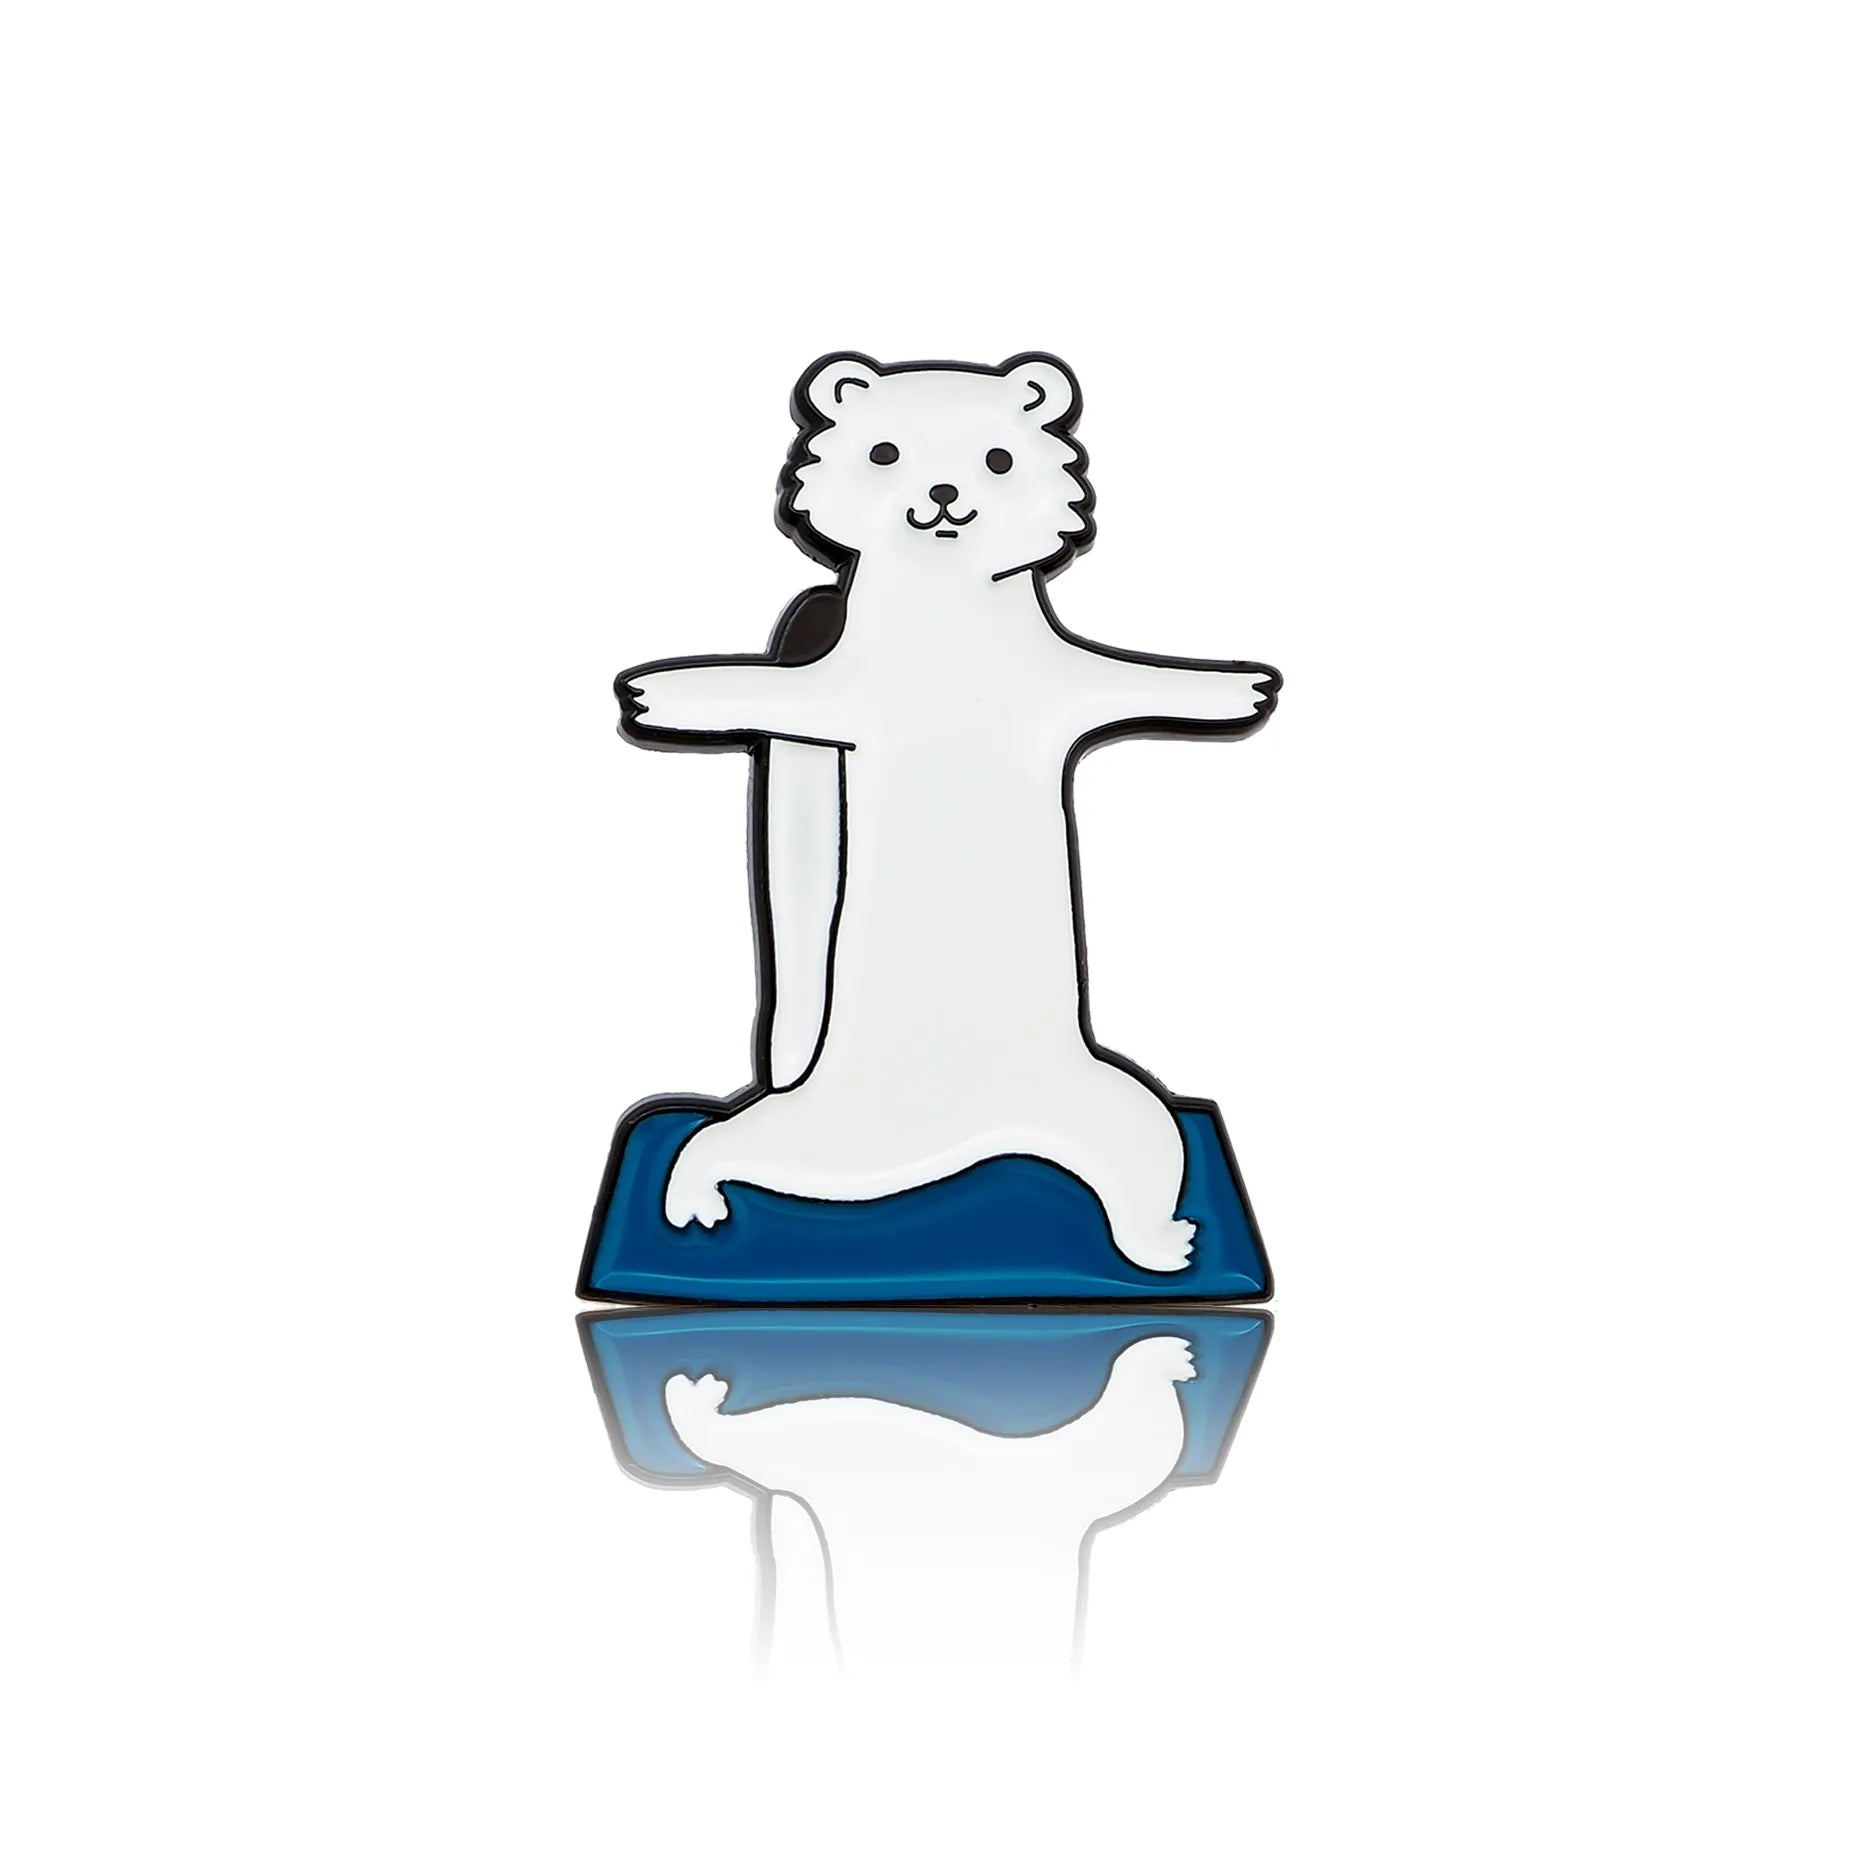 Biała fretka ćwicząca jogę na niebieskiej macie